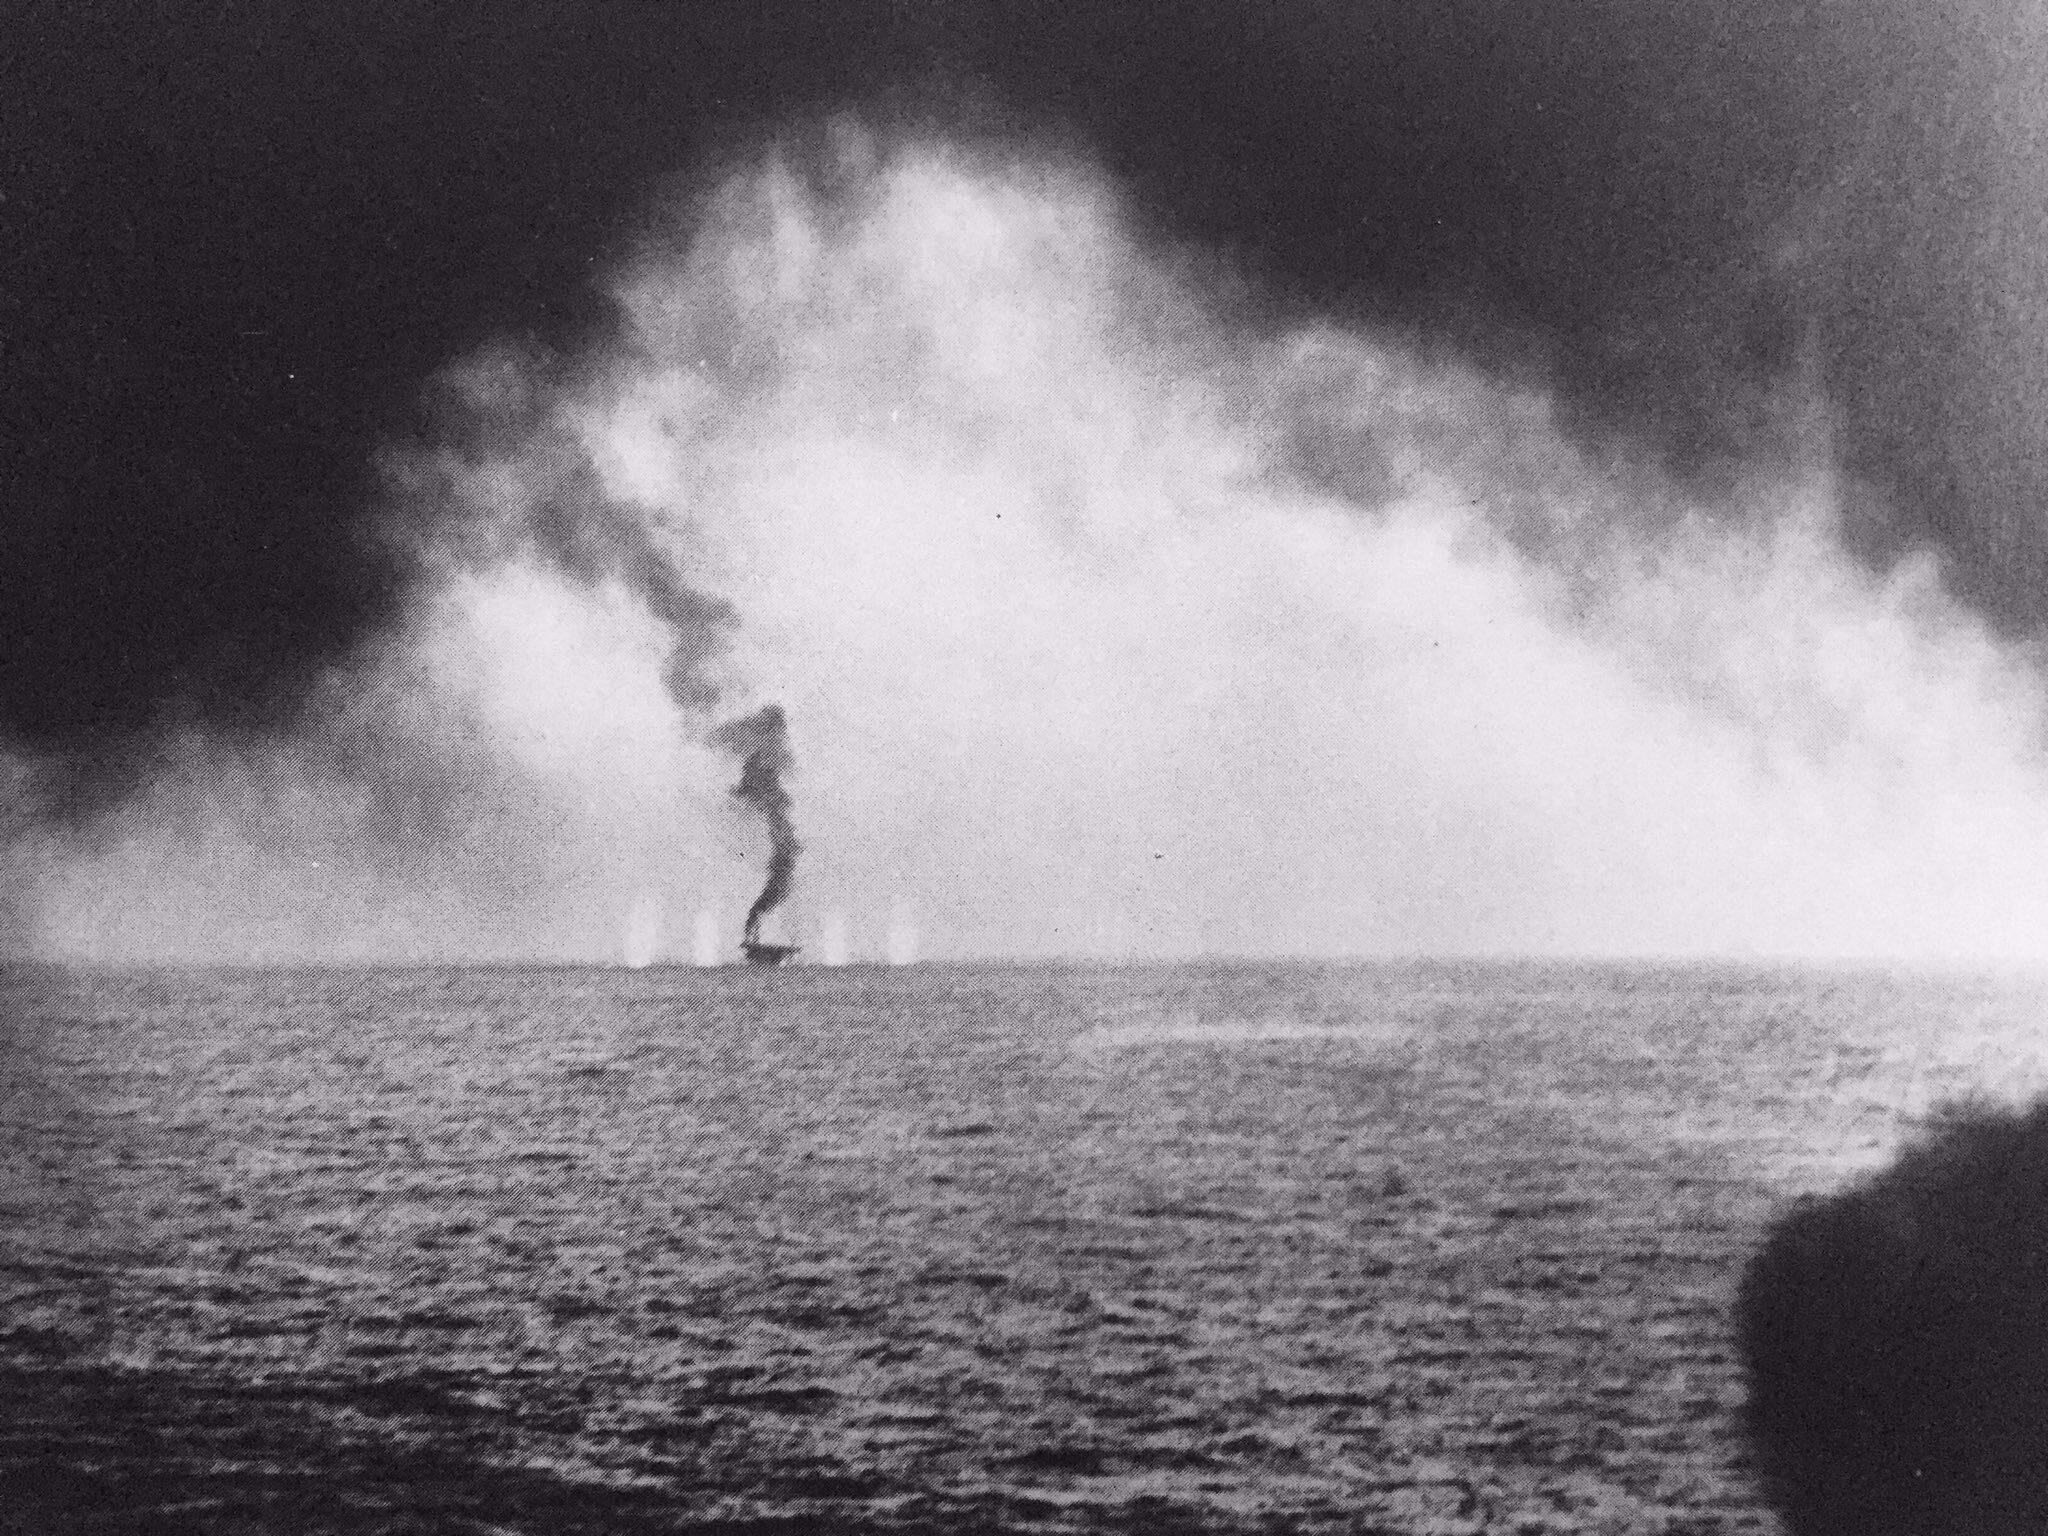 美军摄影师于萨马岛海战当日拍摄的,被大和远距离跨射的白平原号护航